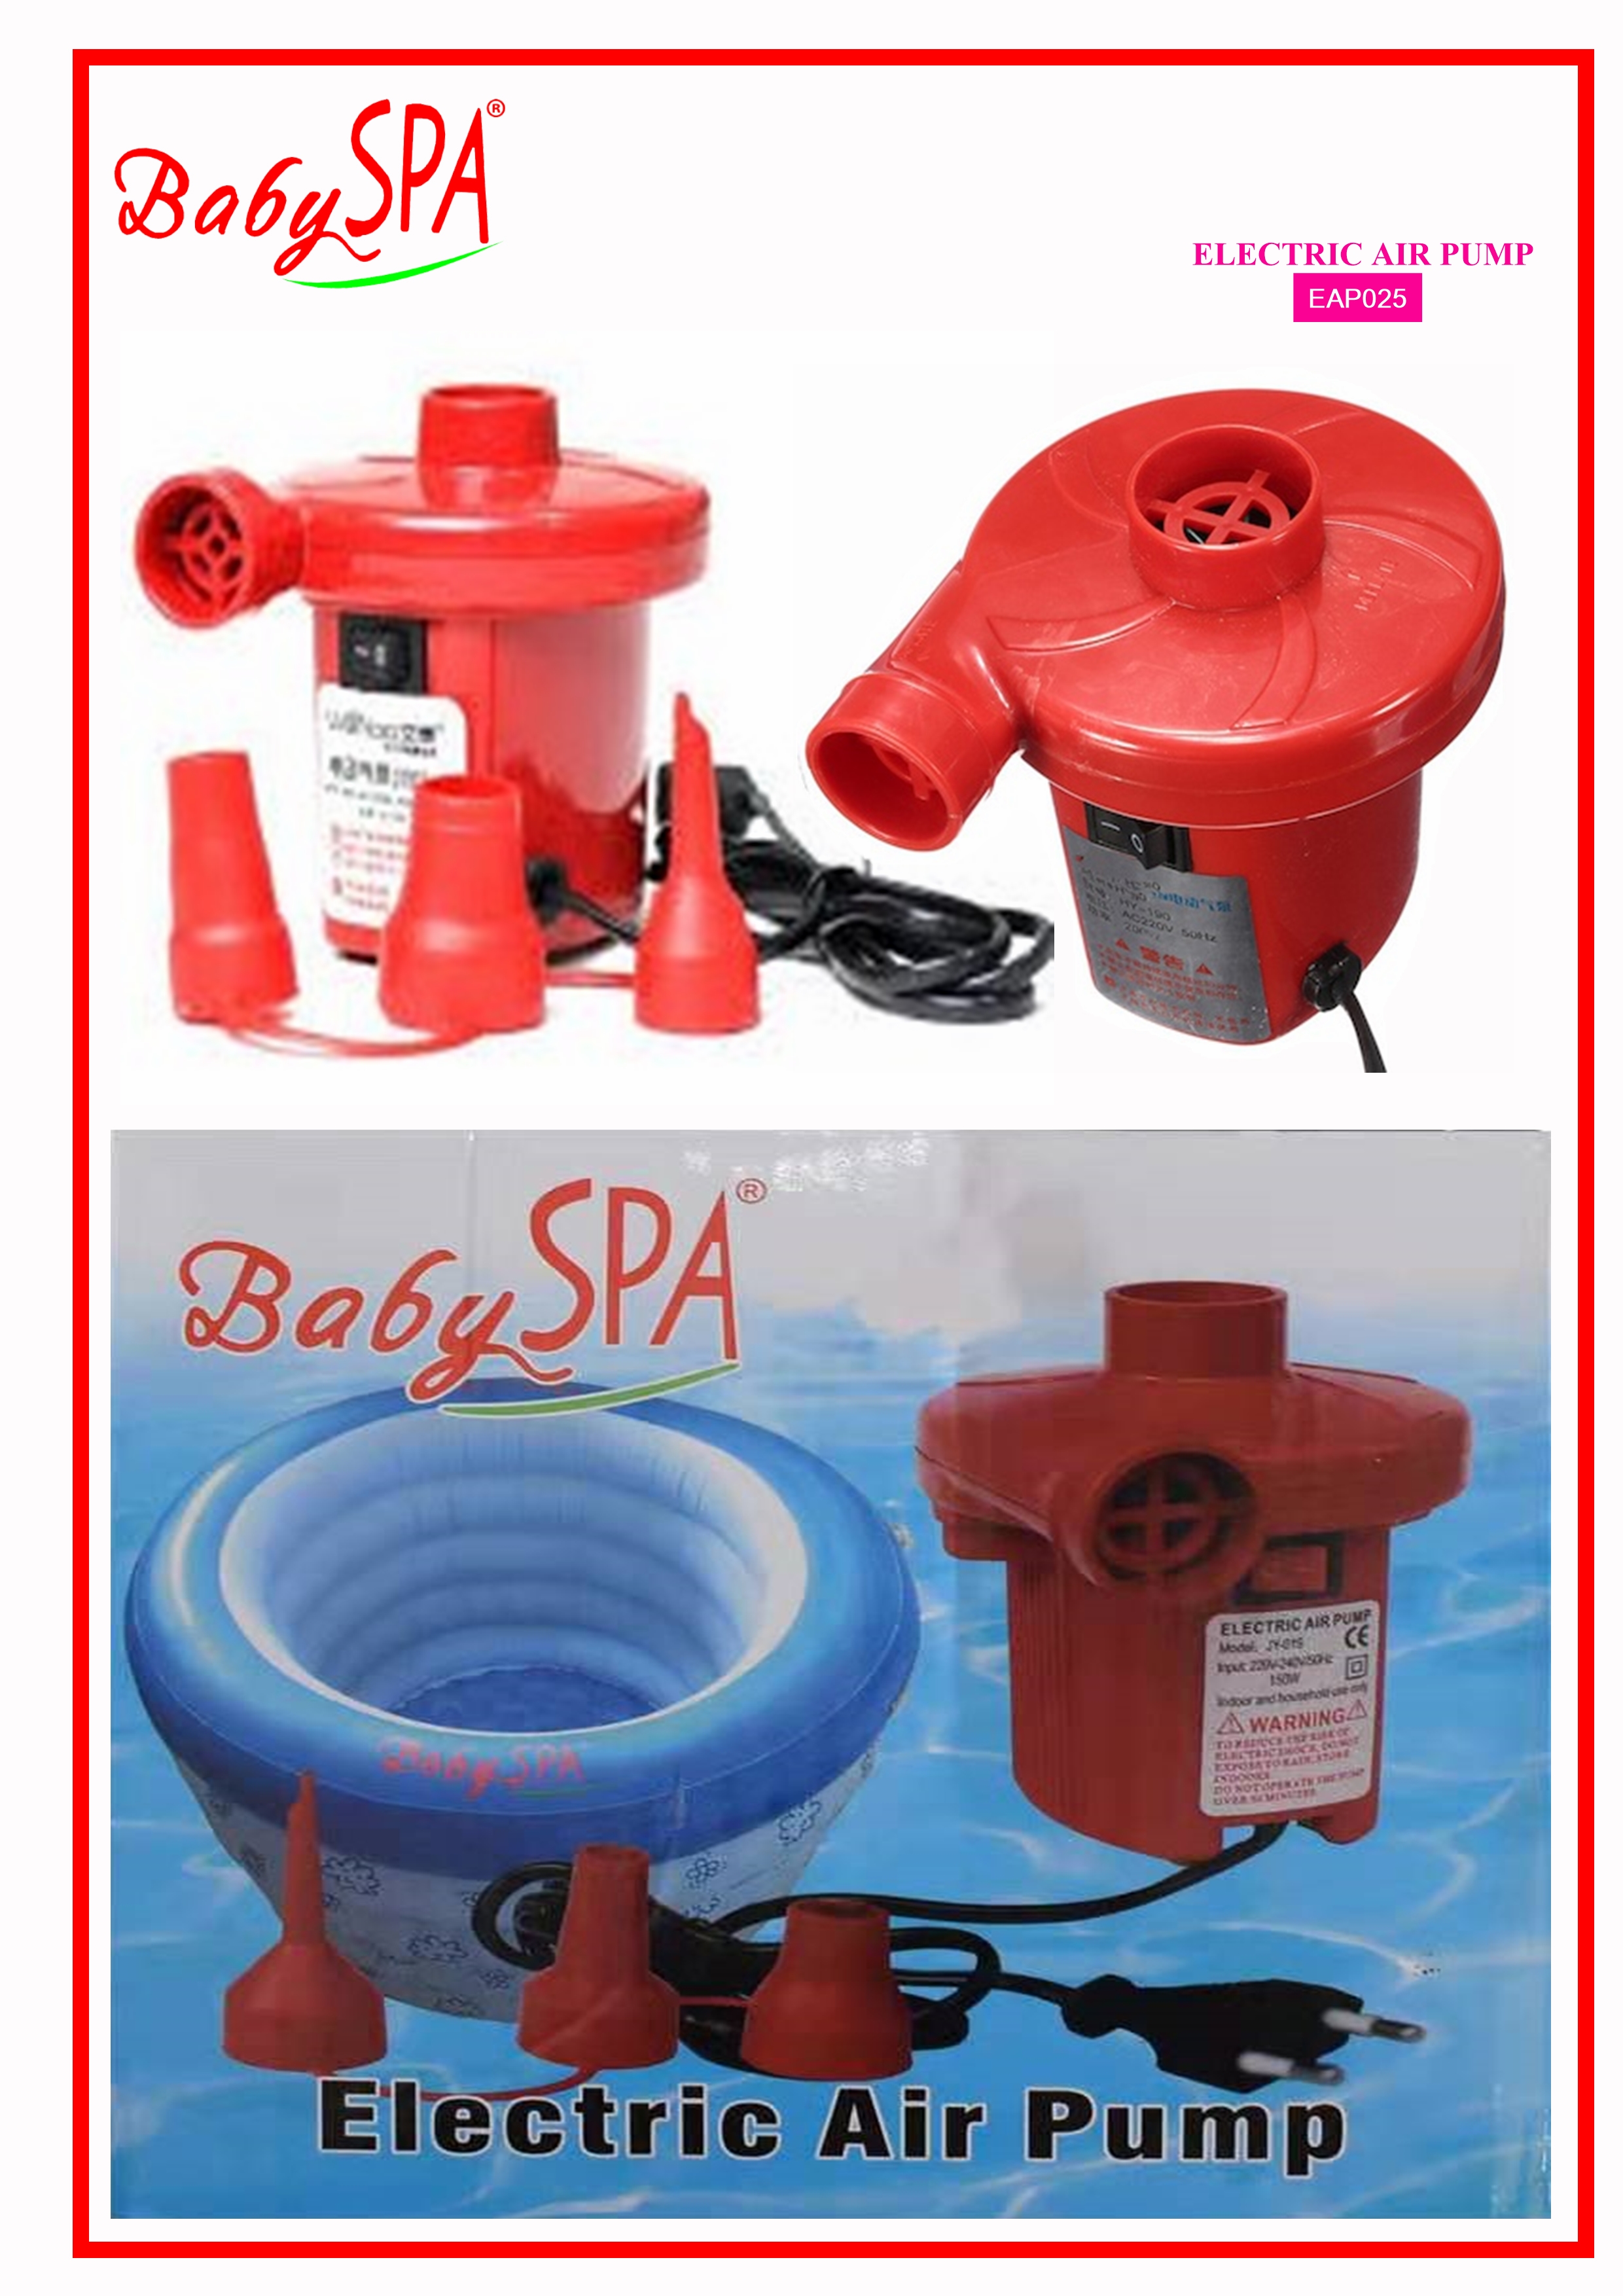 baby-fair BabySPA Electric Air Pump